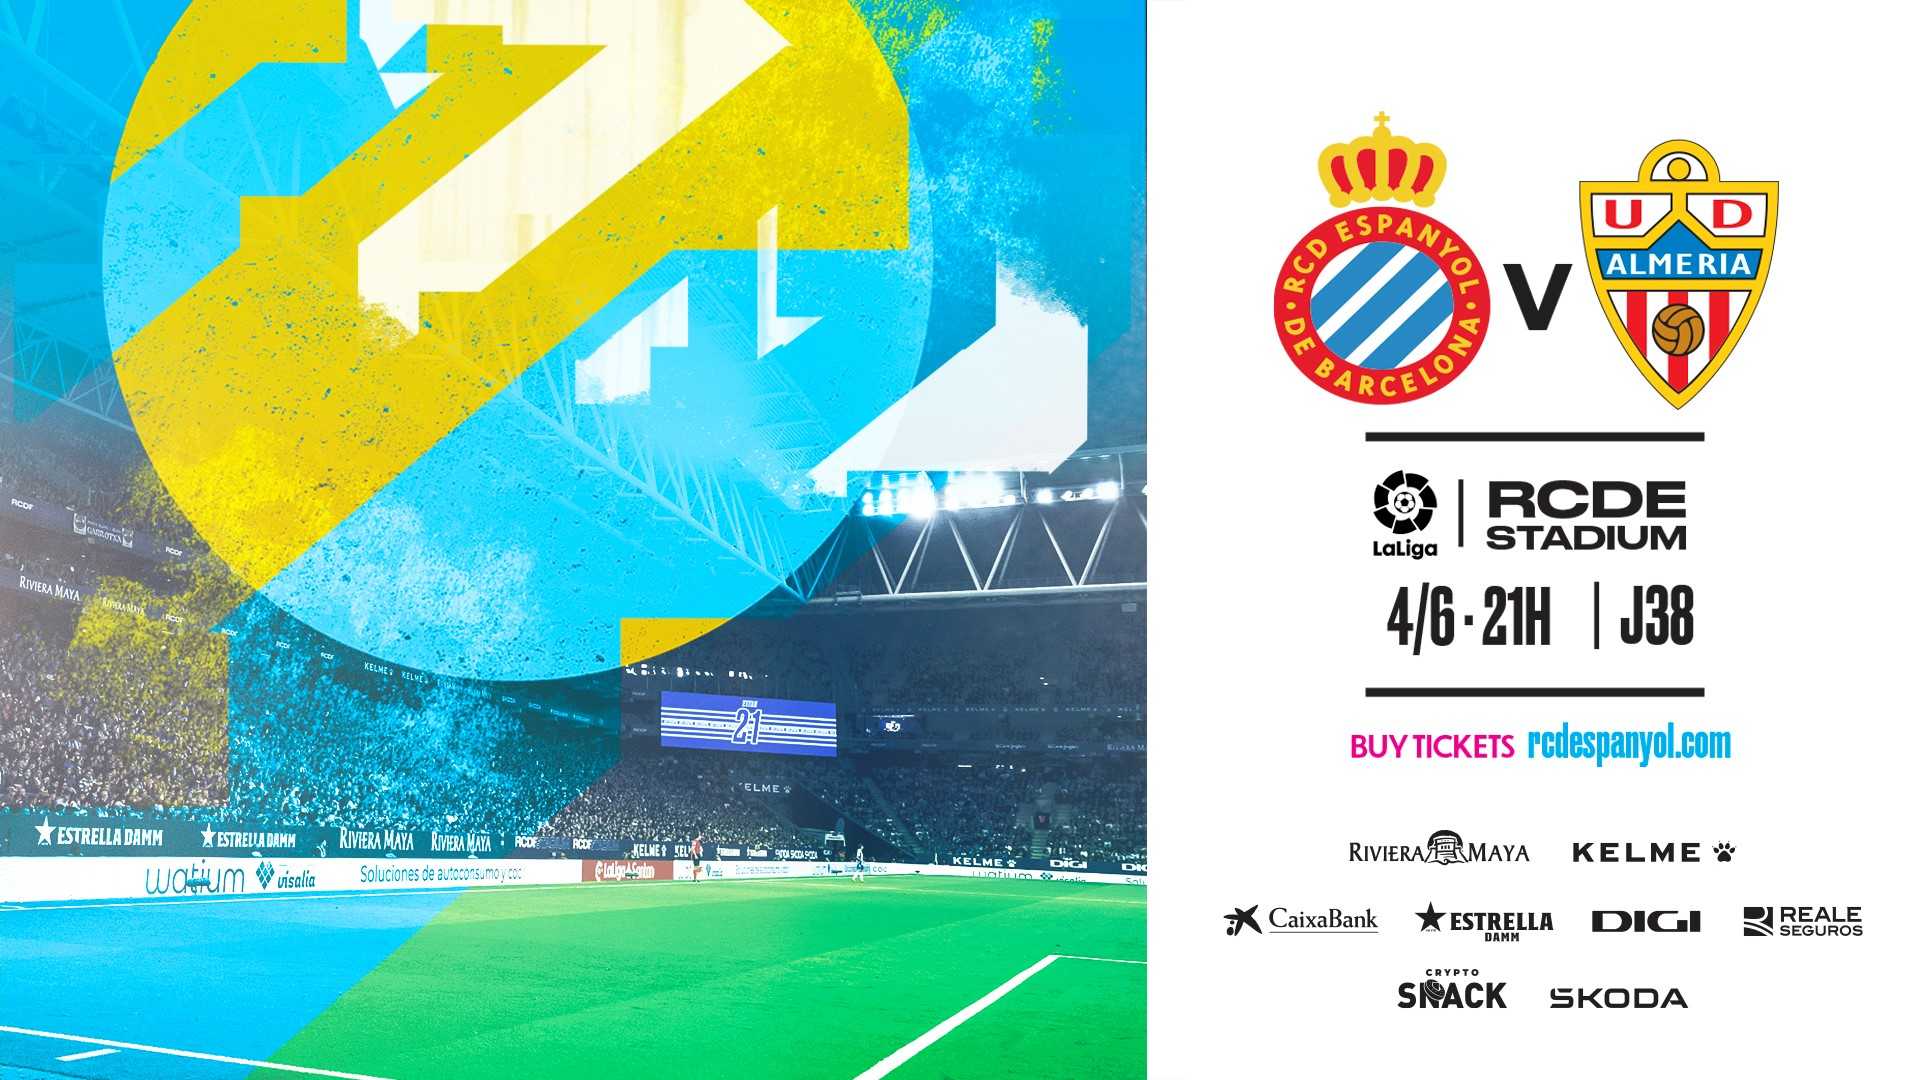 Matchday information: RCD Espanyol vs. UD Almería